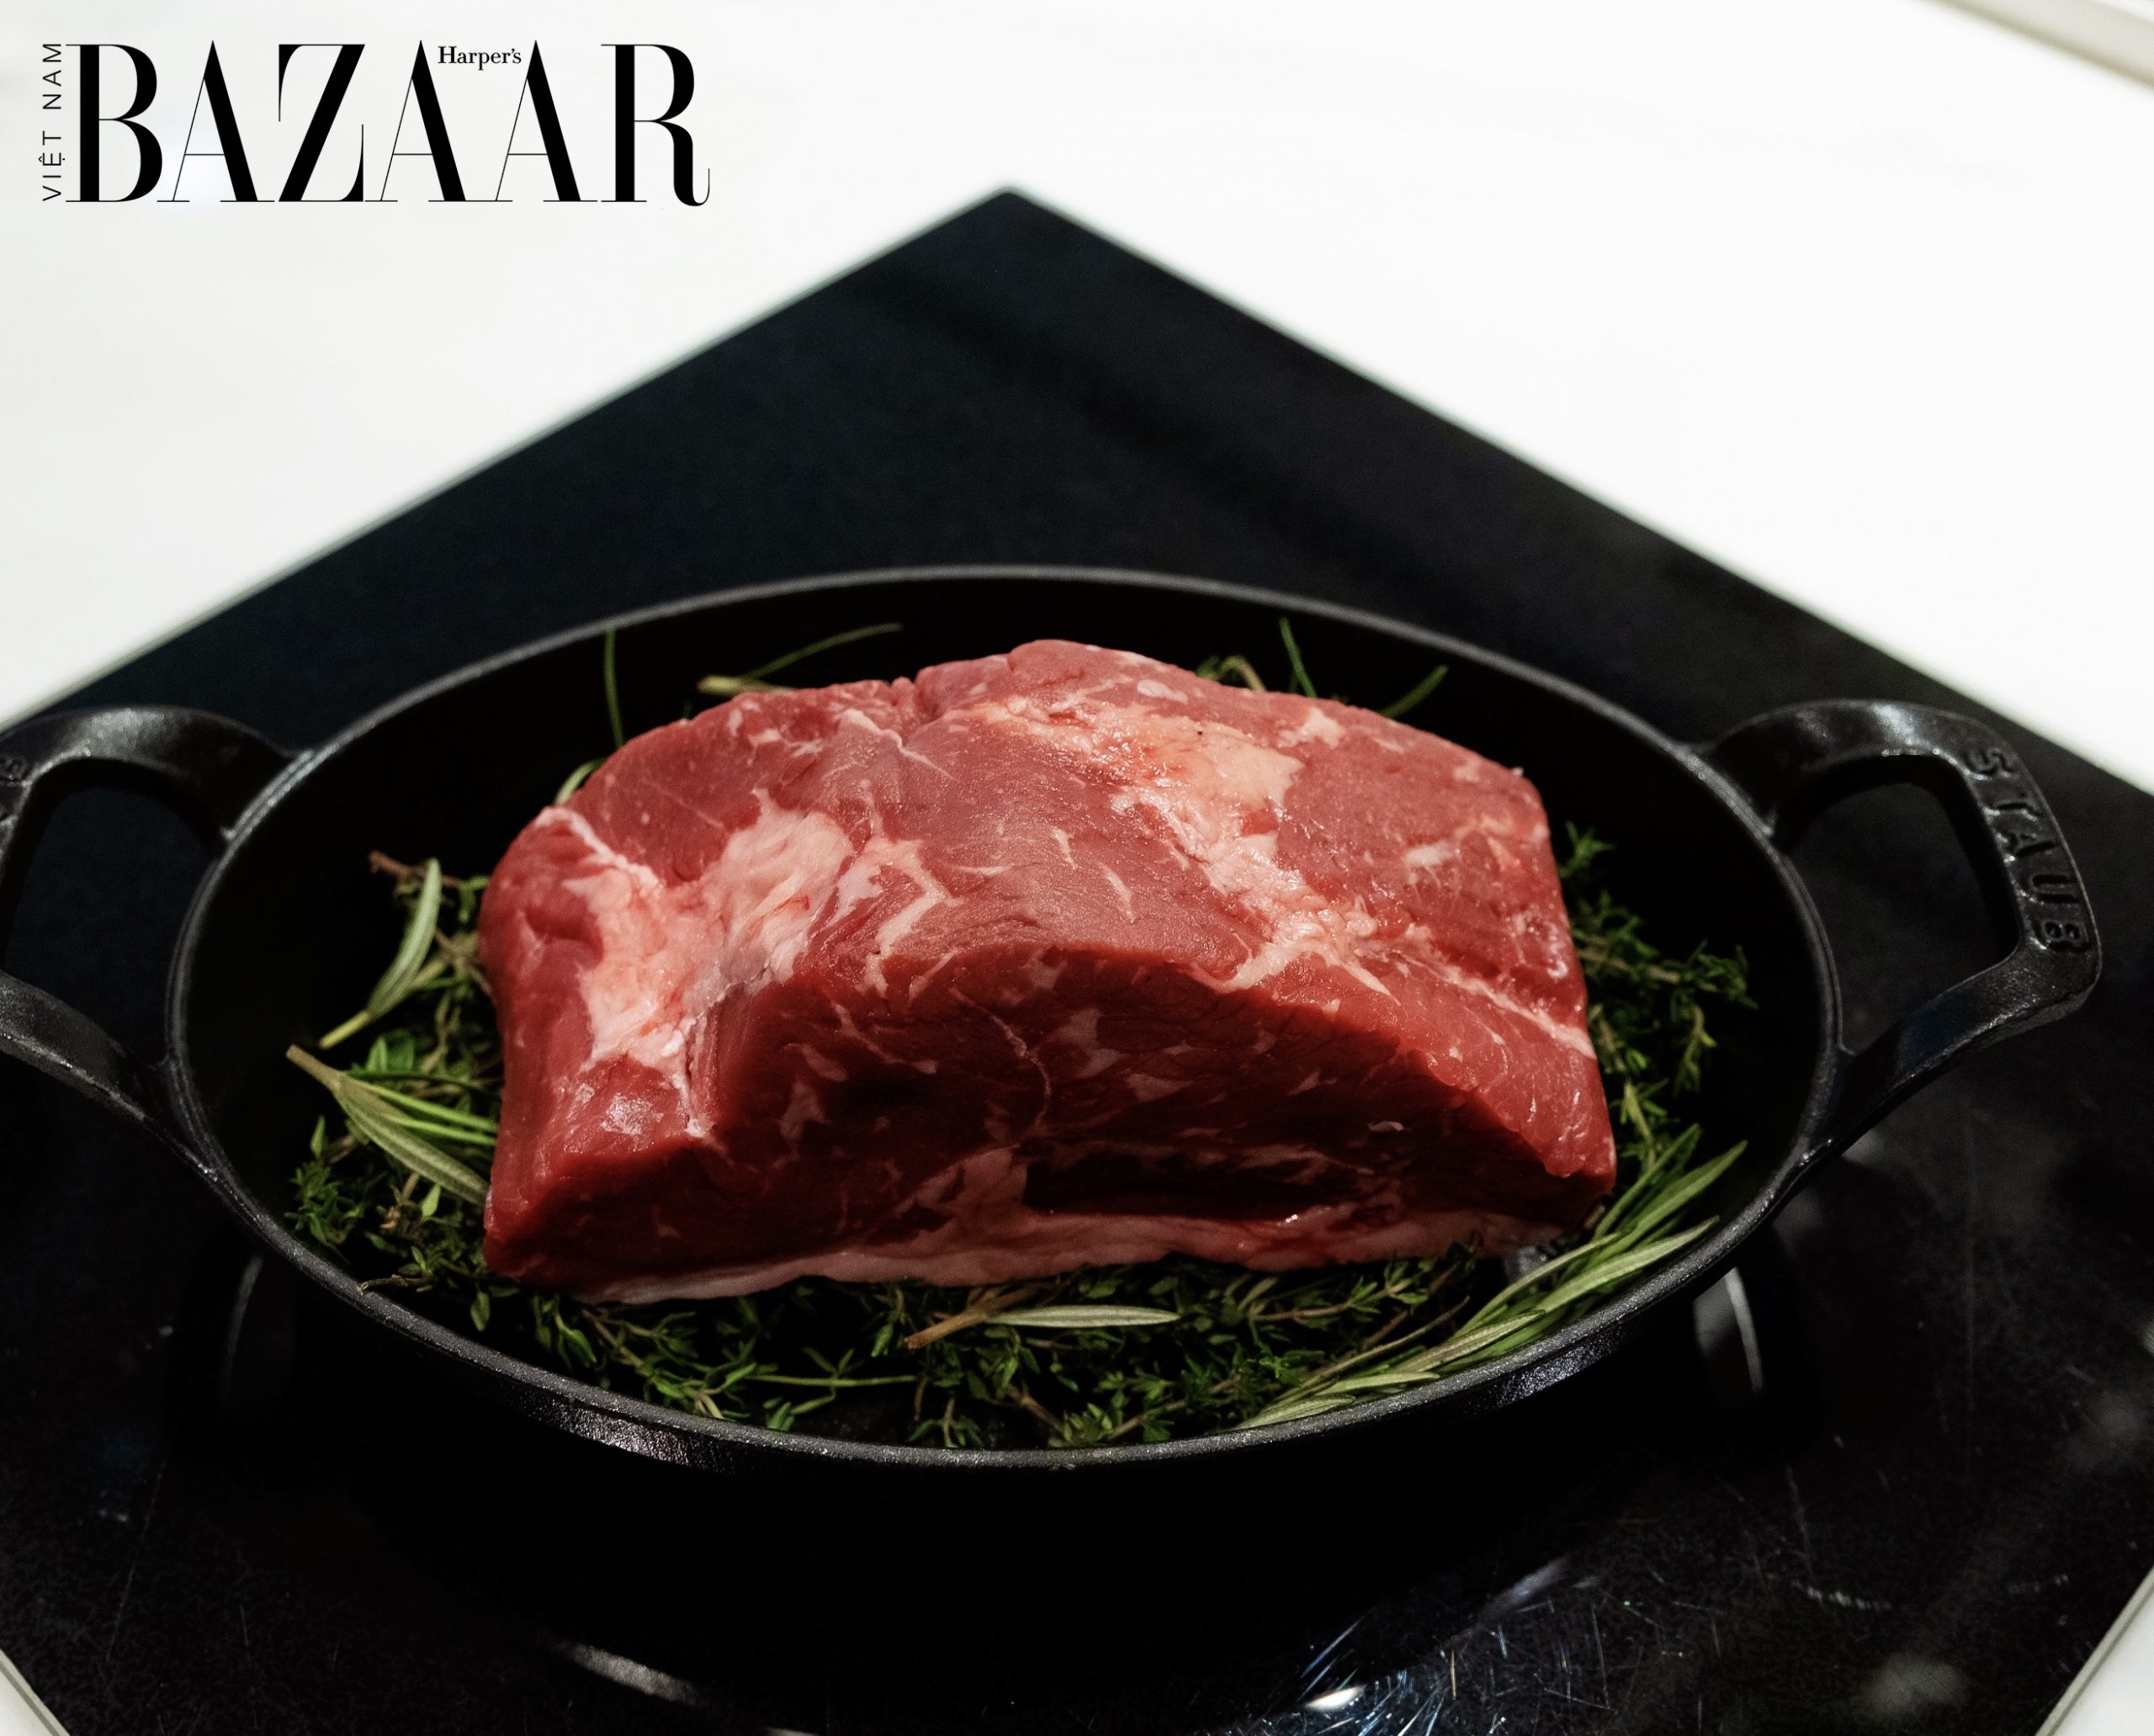 Harper's Bazaar_MLA kết hợp Park Hyatt Saigon giới thiệu bò úc_4